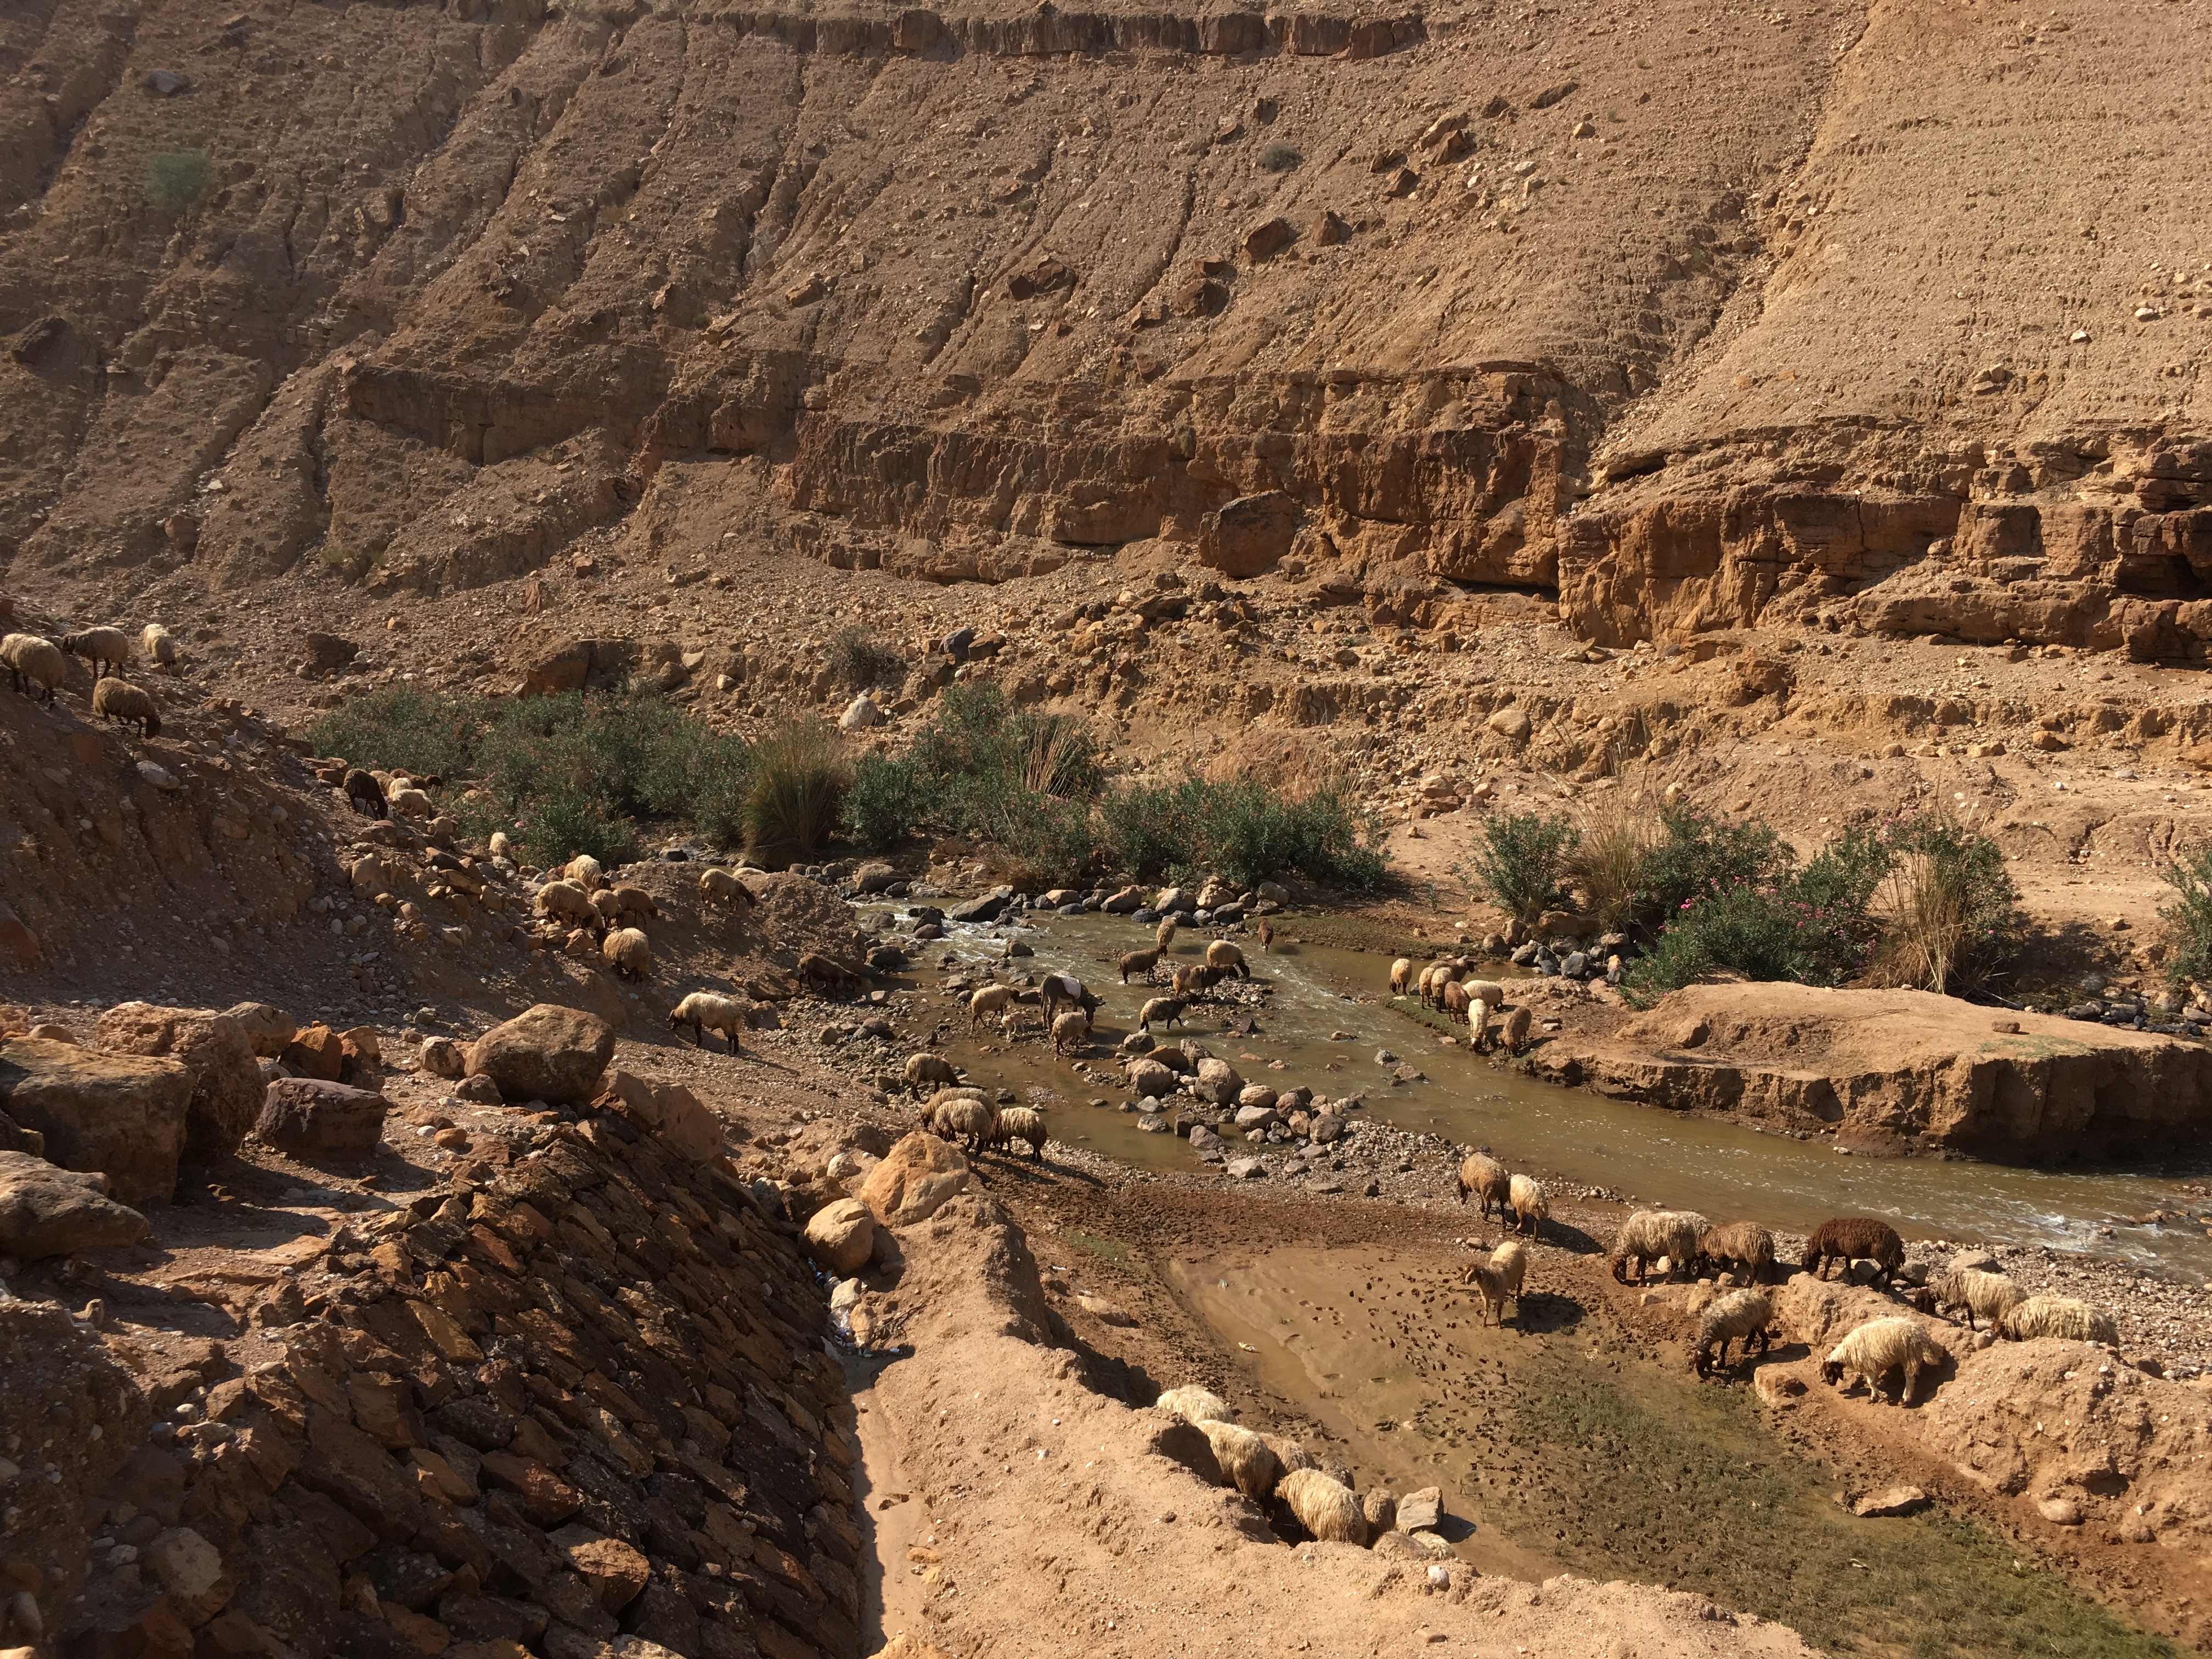 Sheep at a river in Jordan